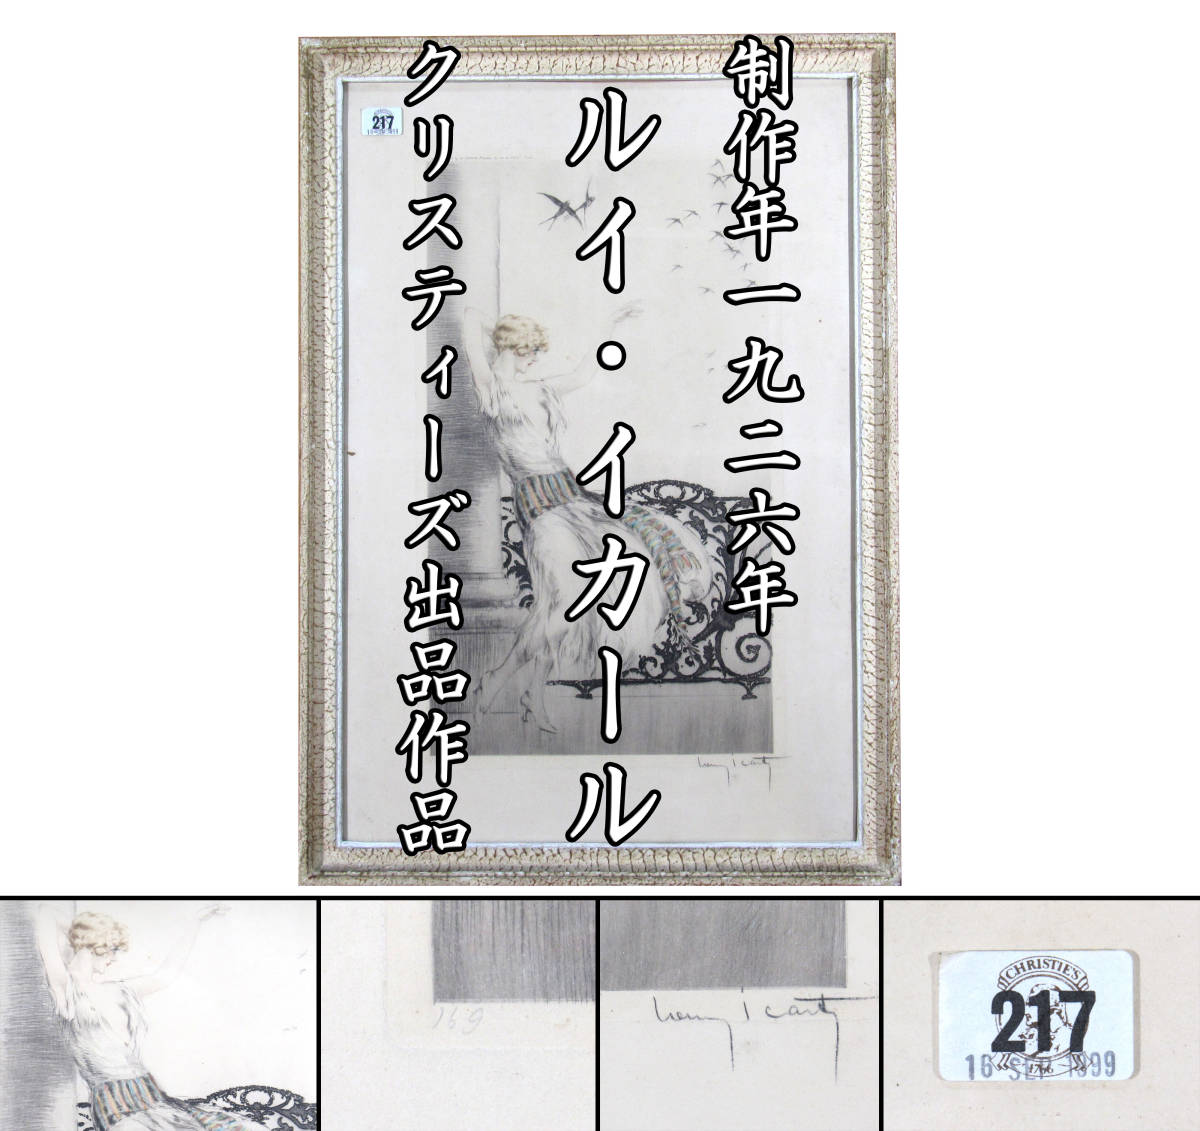 【エヌコレ】ルイ・イカール「ツバメ」制作年1926年 クリスティーズ1999年出品作品 額寸66.5×46.9cm 直筆サイン 希少品 本物保証